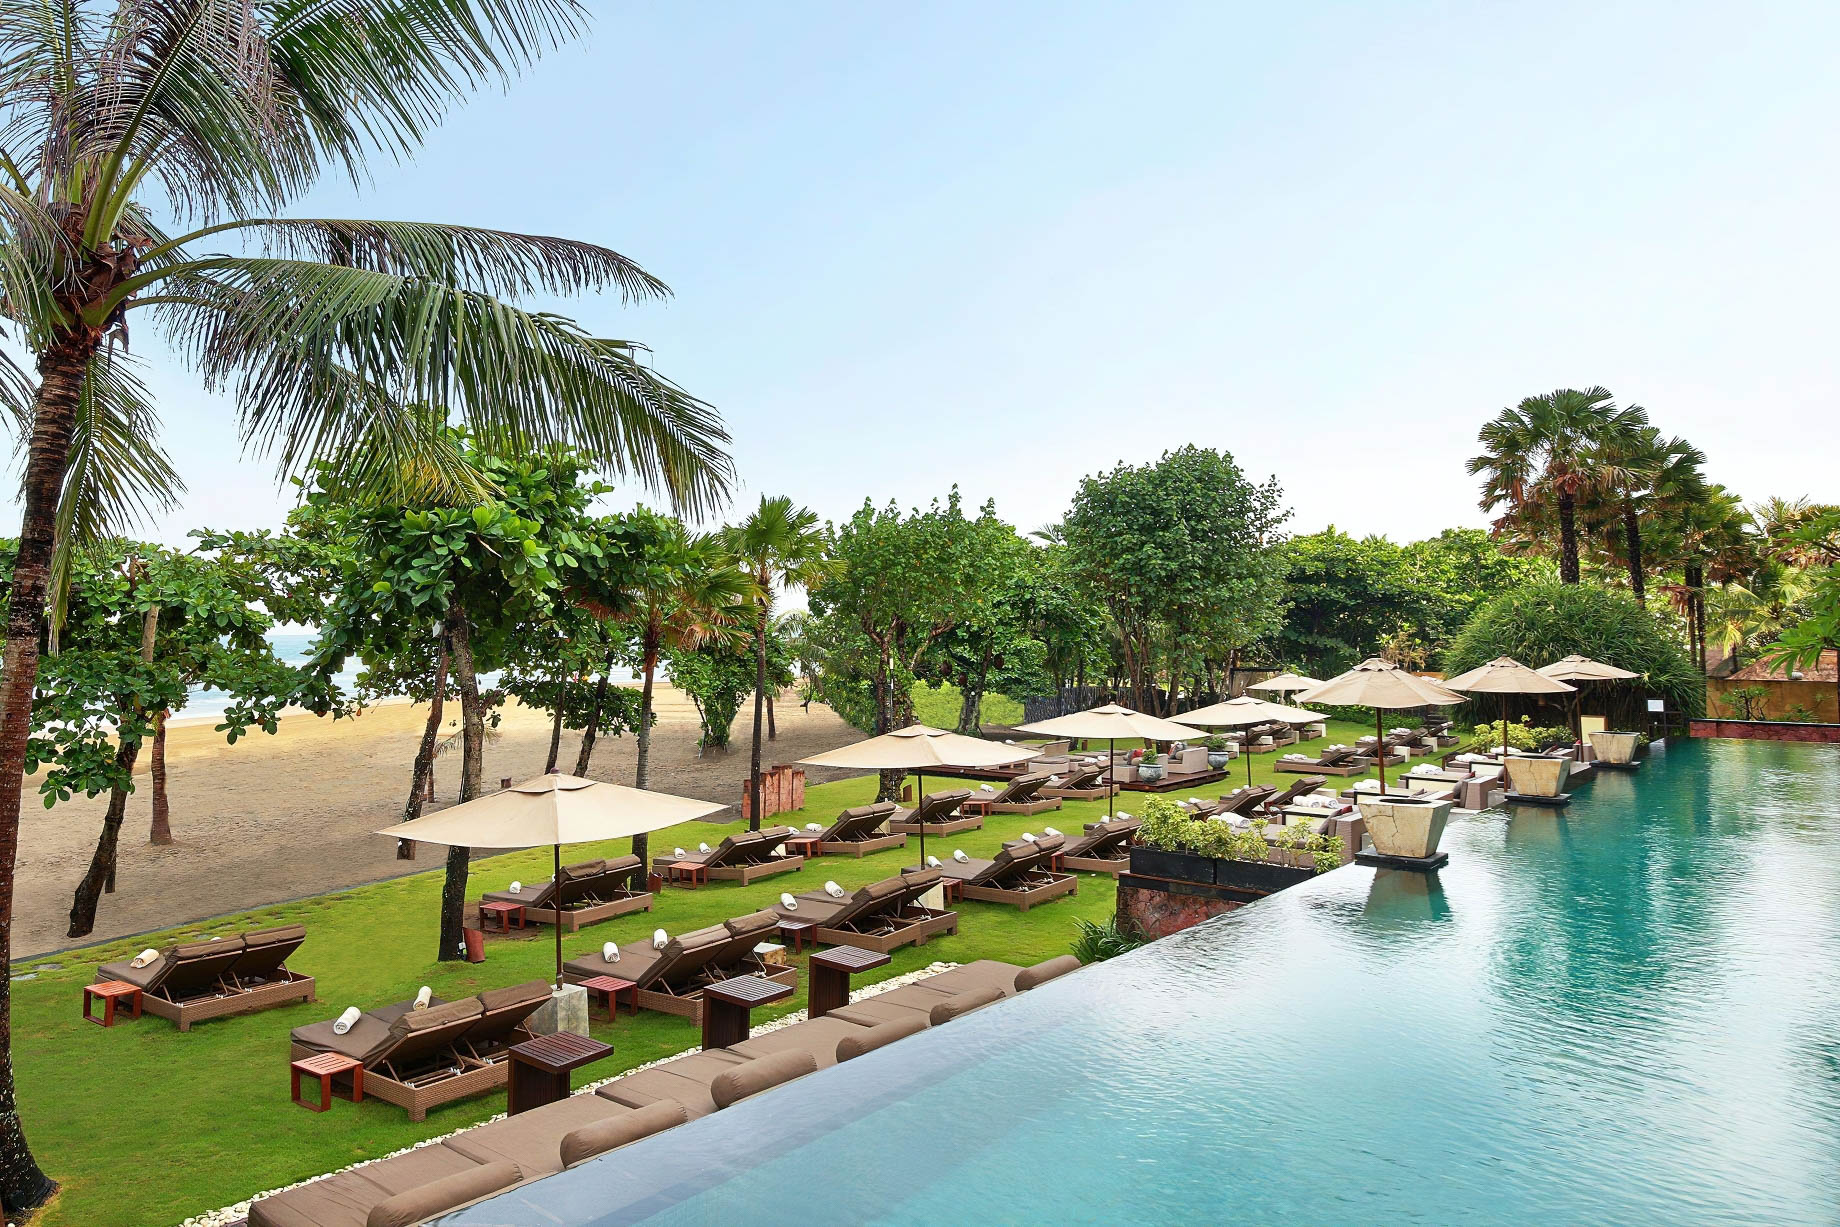 Anantara Seminyak Bali Resort – Bali, Indonesia – Pool Deck Beach View